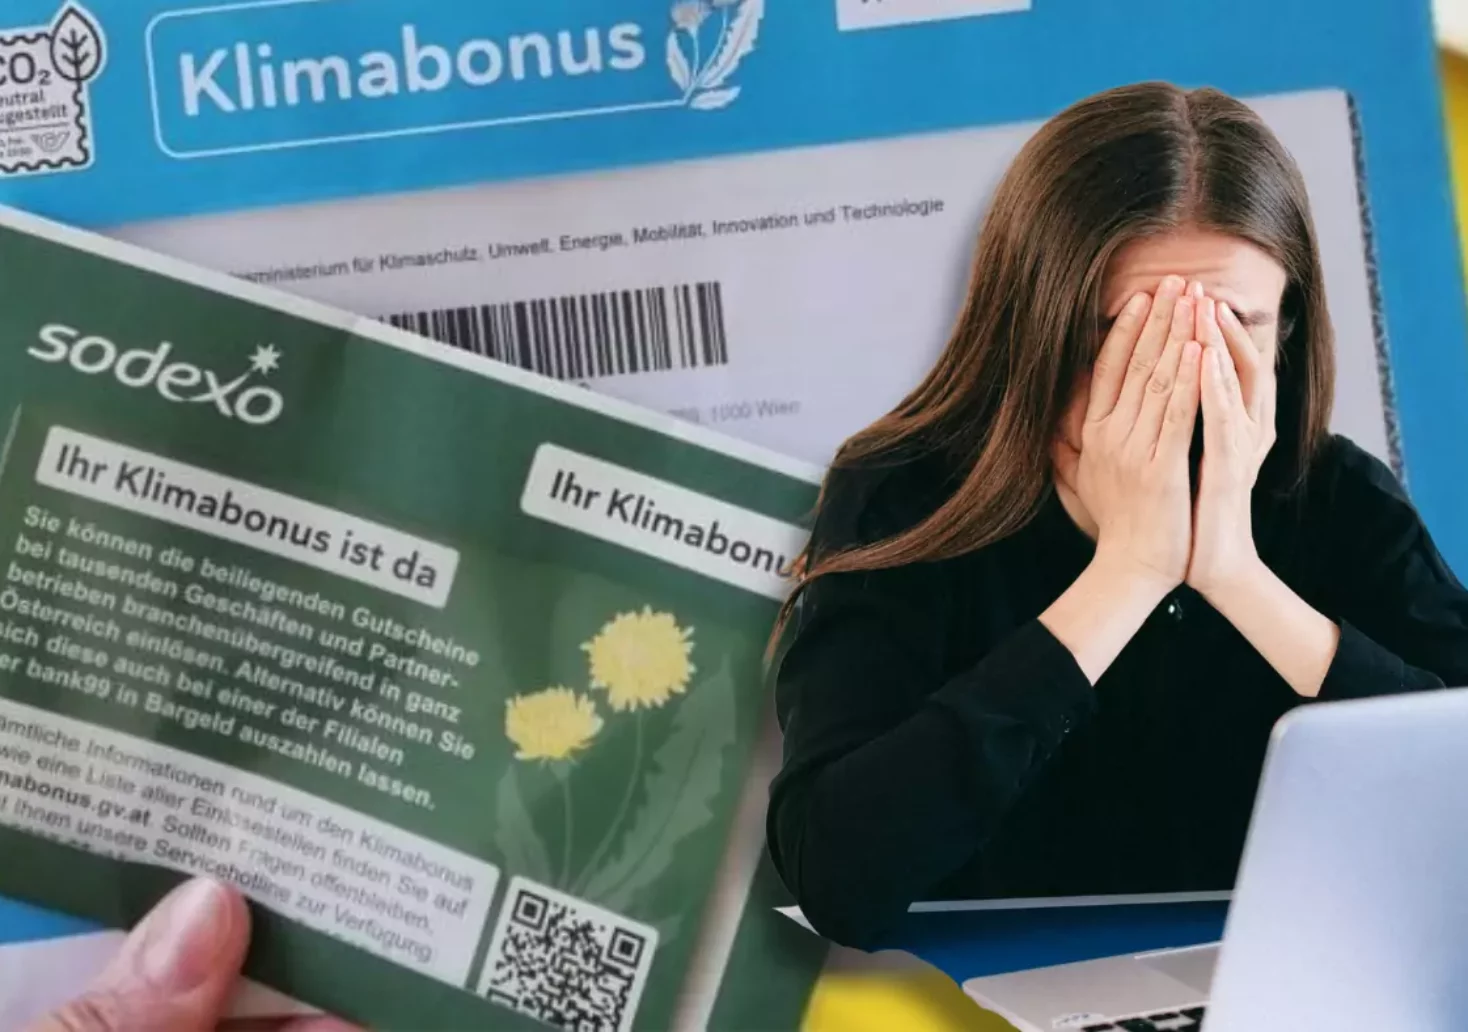 Bildmontage auf 5min.at zeigt eine verzweifelte Frau und ein Kuvert des österreichischen Klimabonus.